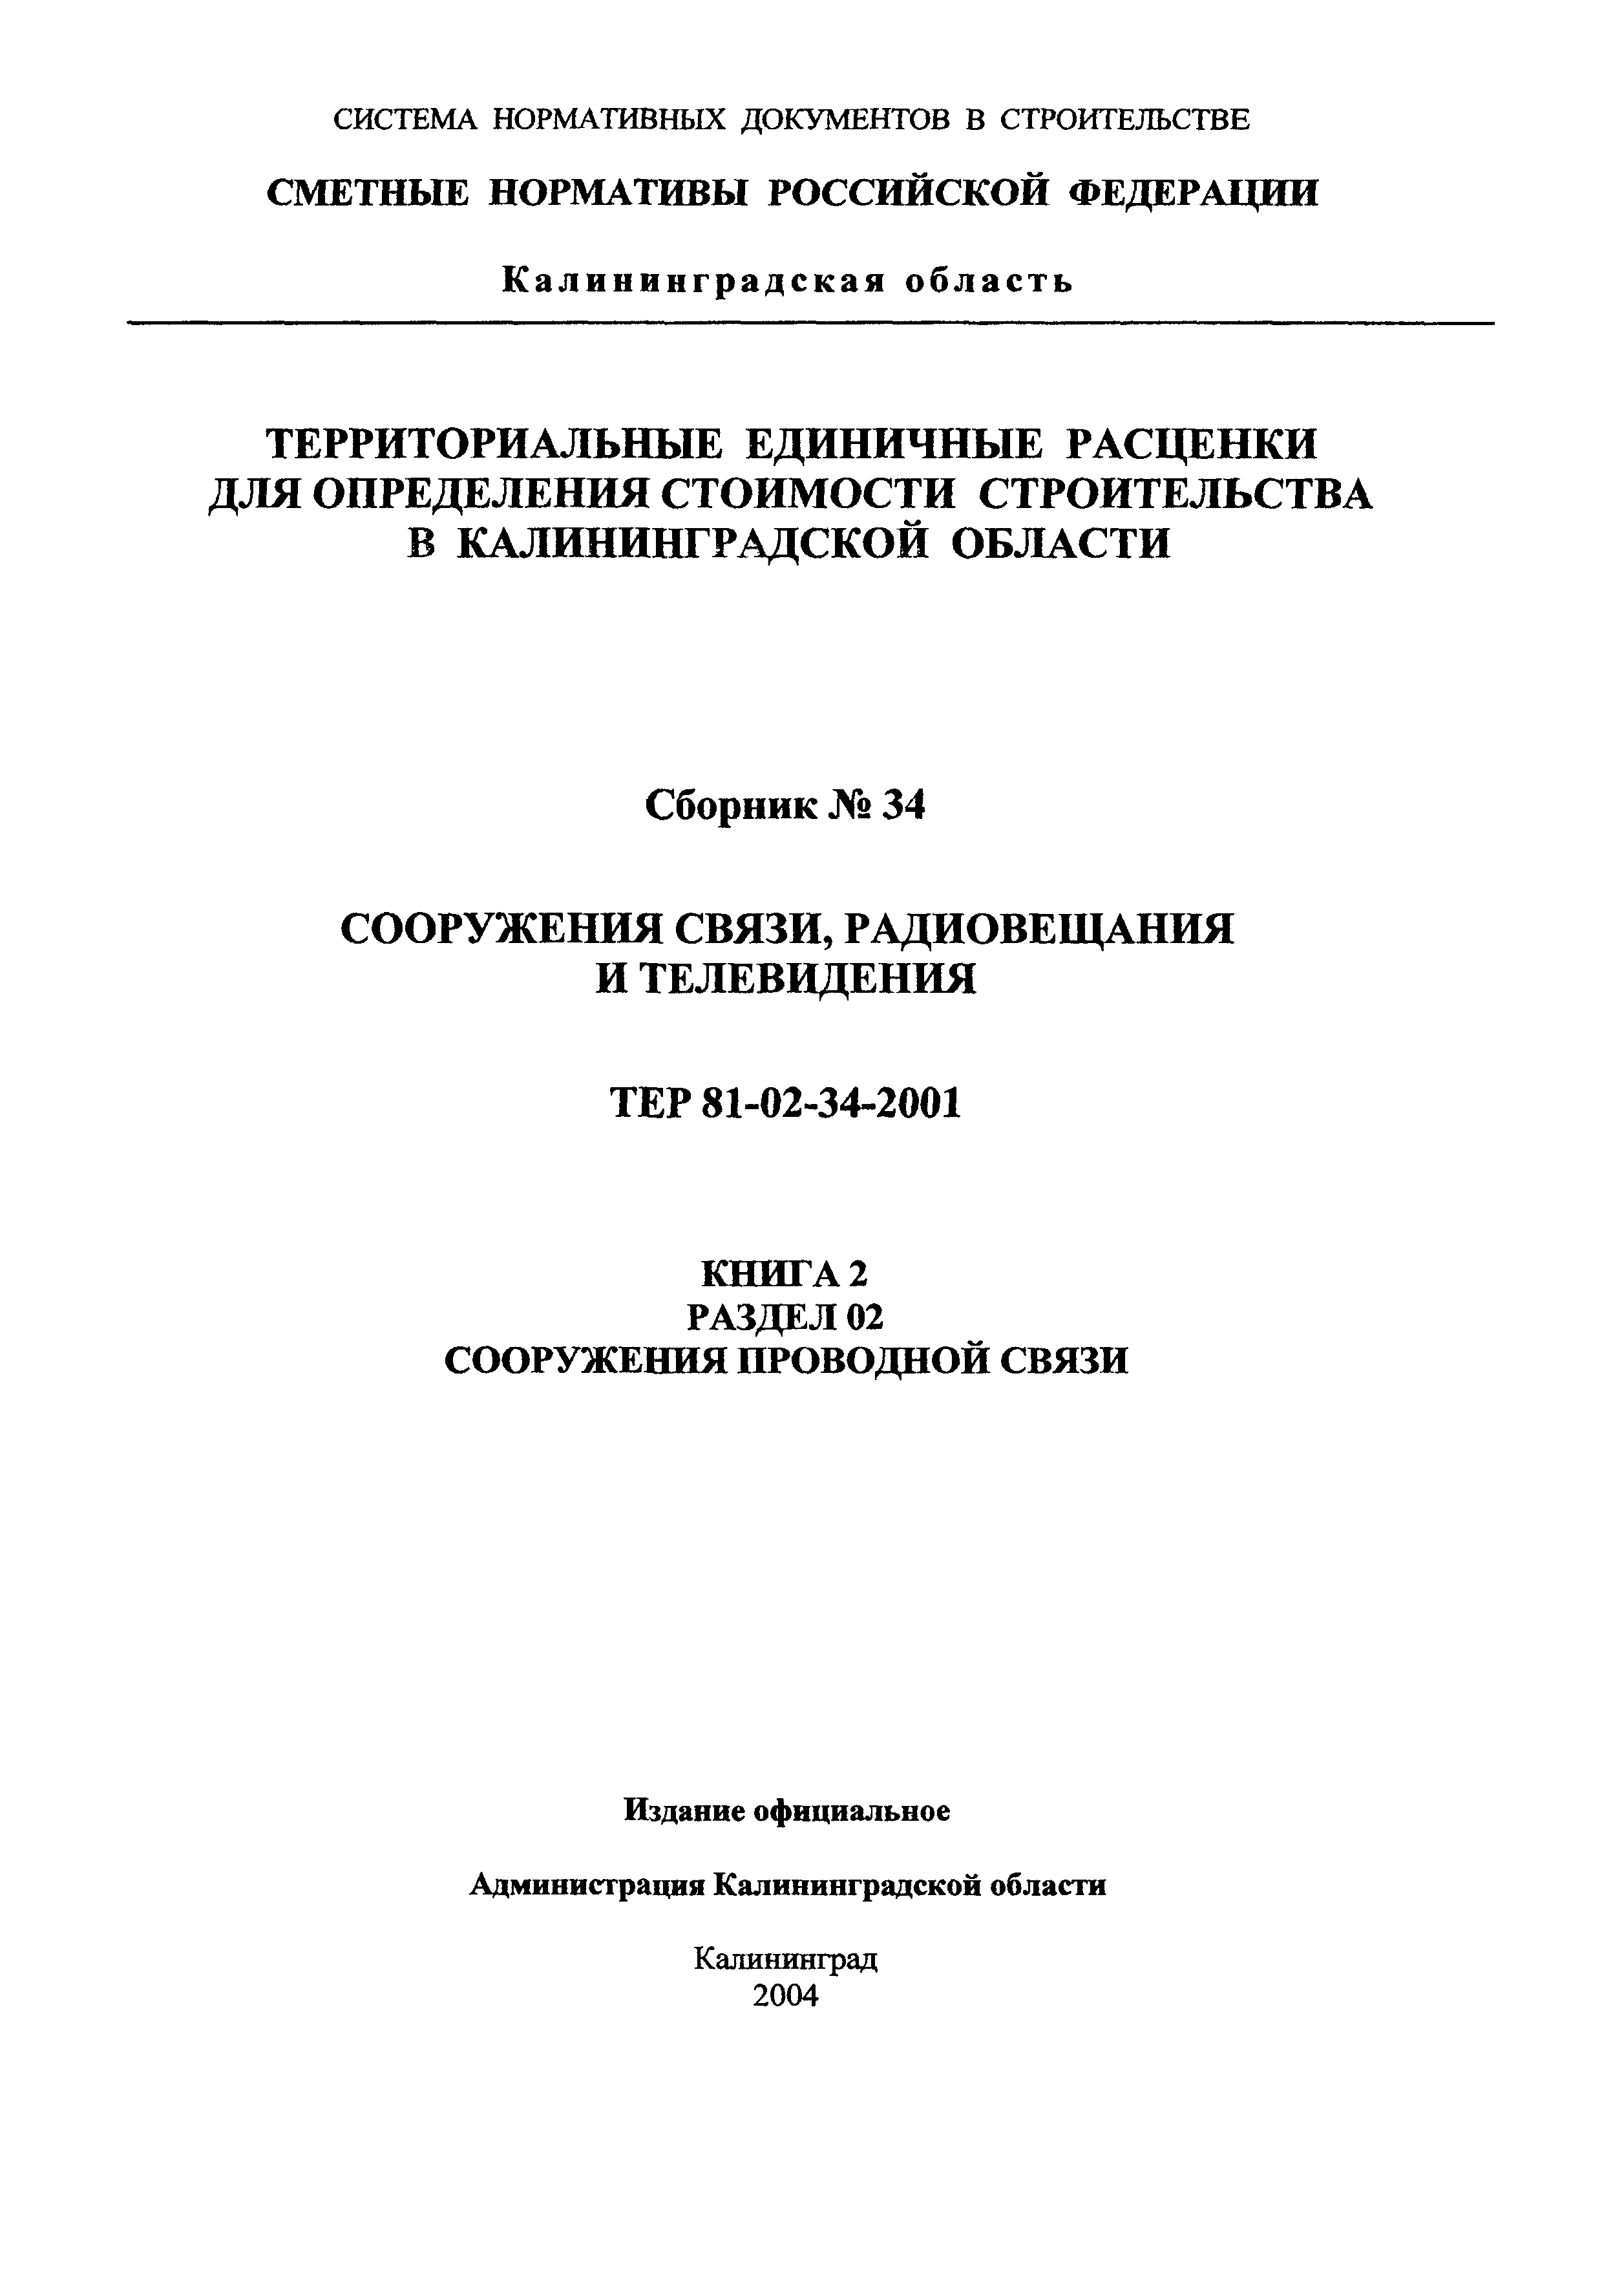 ТЕР Калининградская область 2001-34